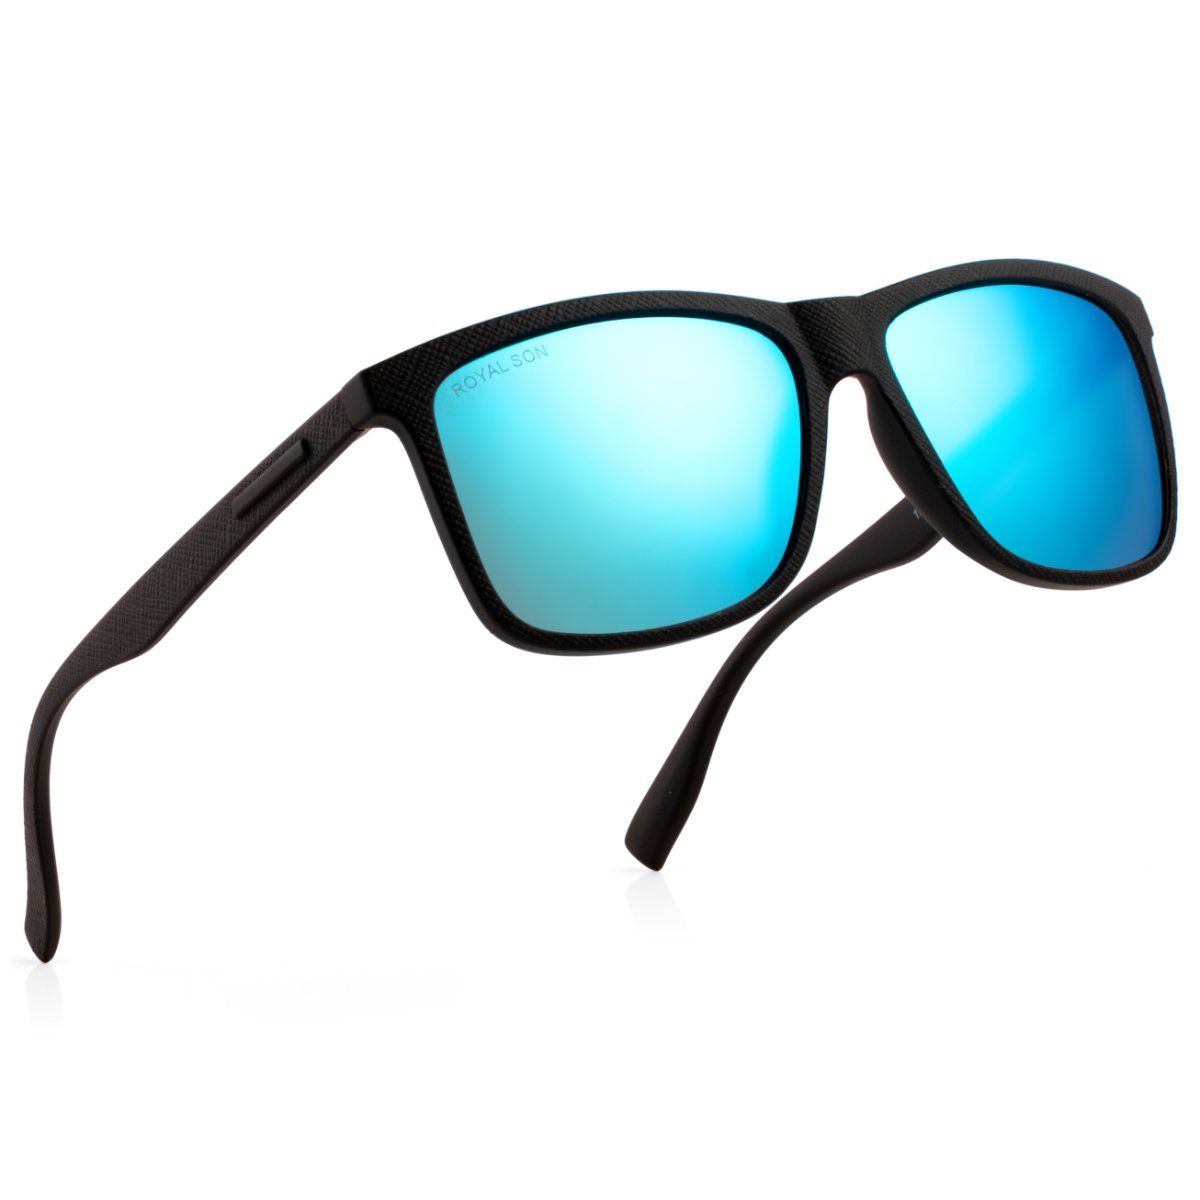 Buy ROYAL SON Round Sunglasses Black For Men Online @ Best Prices in India  | Flipkart.com